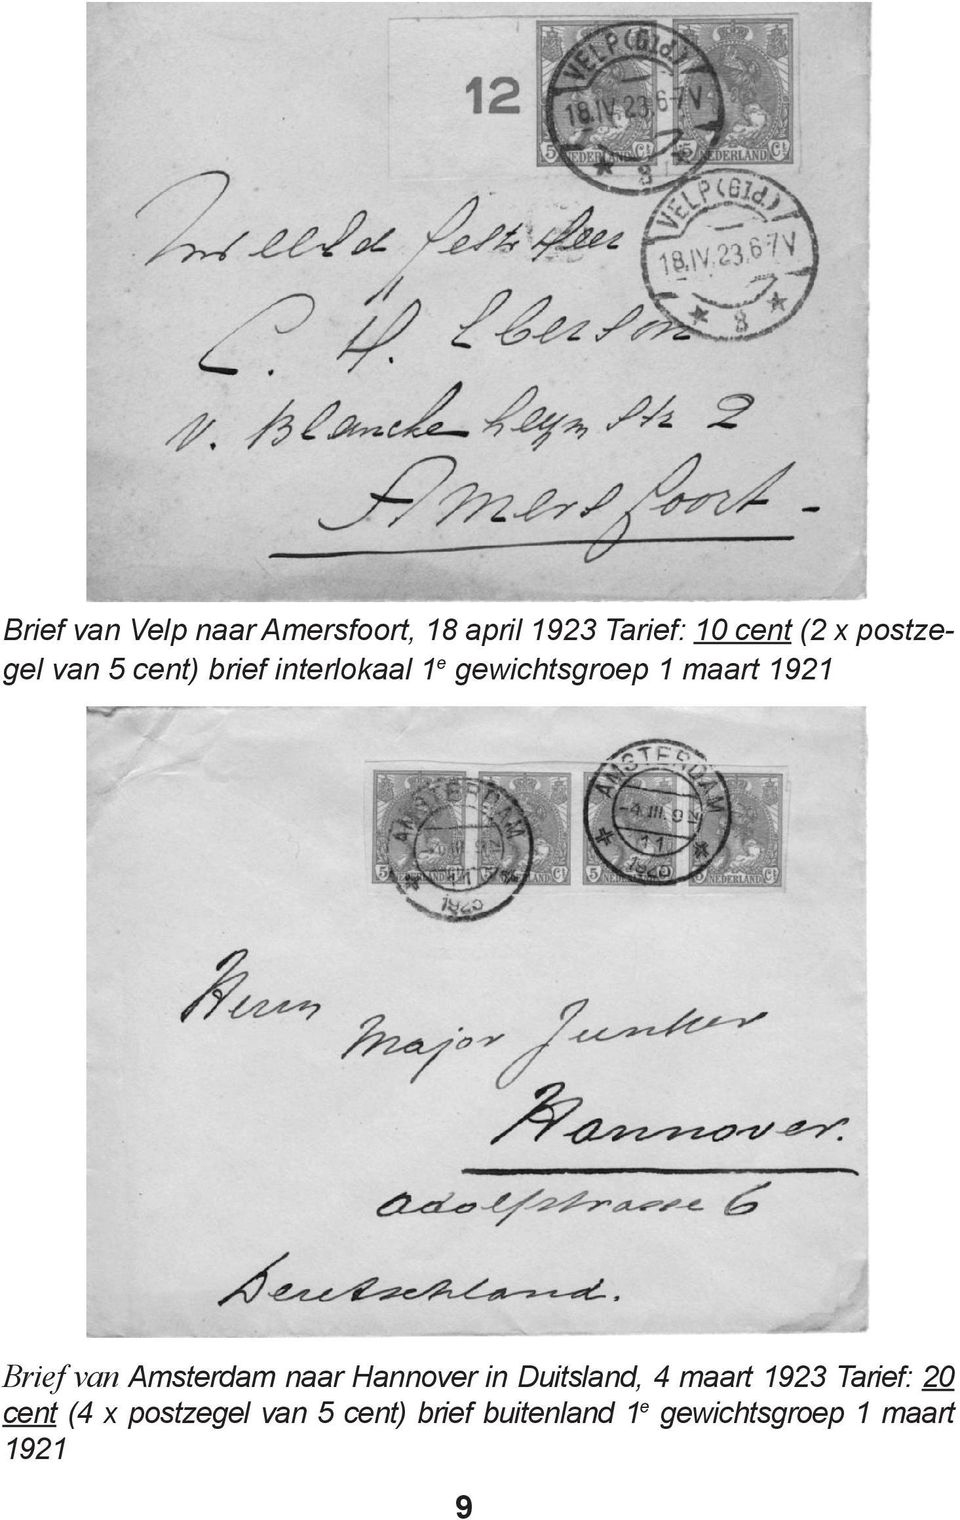 Brief van Amsterdam naar Hannover in Duitsland, 4 maart 1923 Tarief: 20